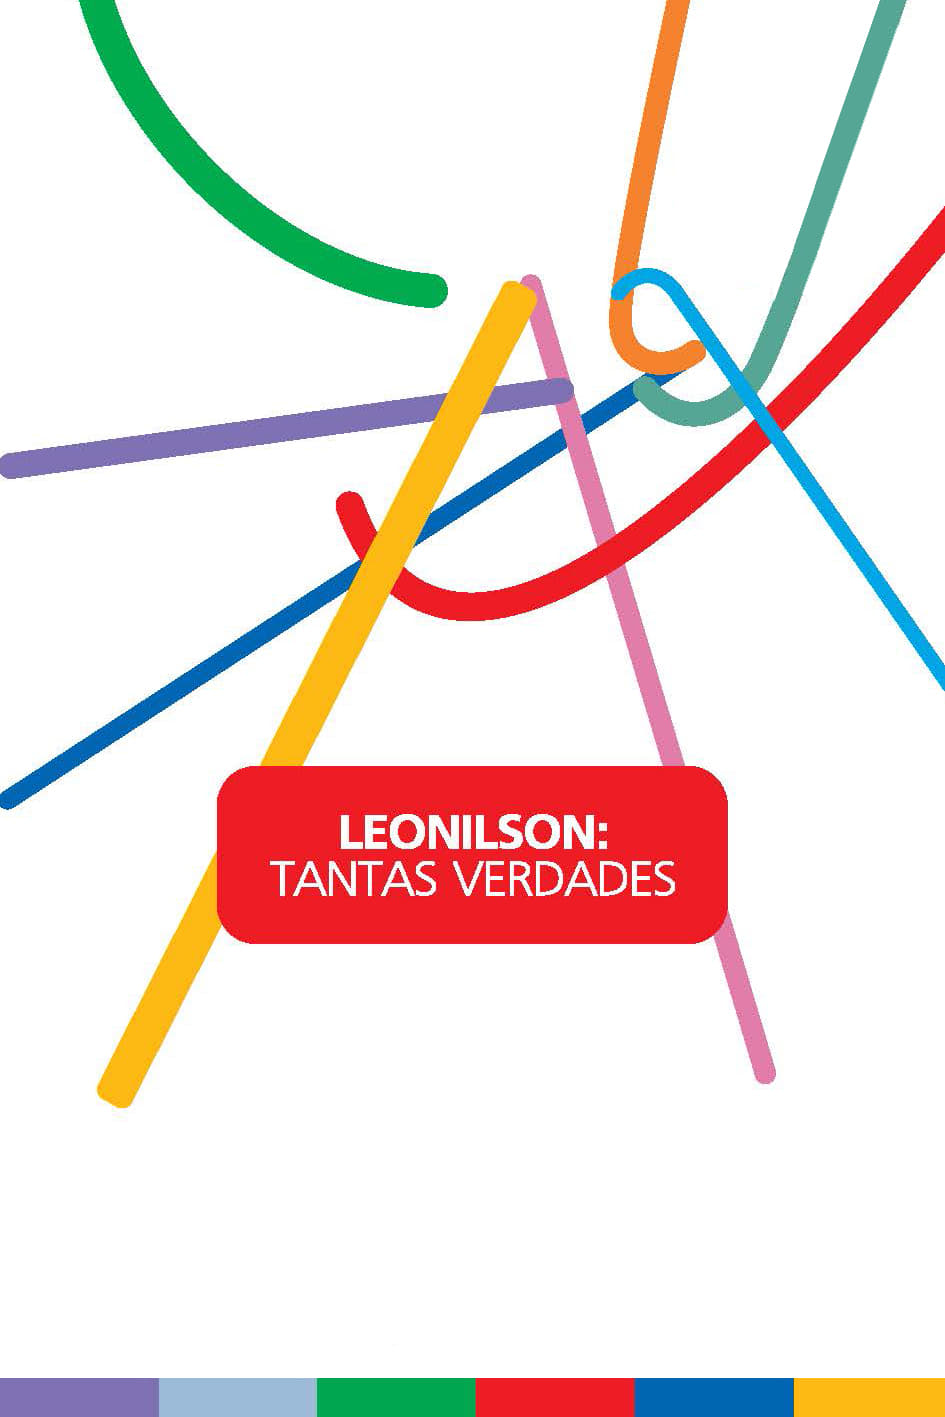 Leonilson: Many Truths